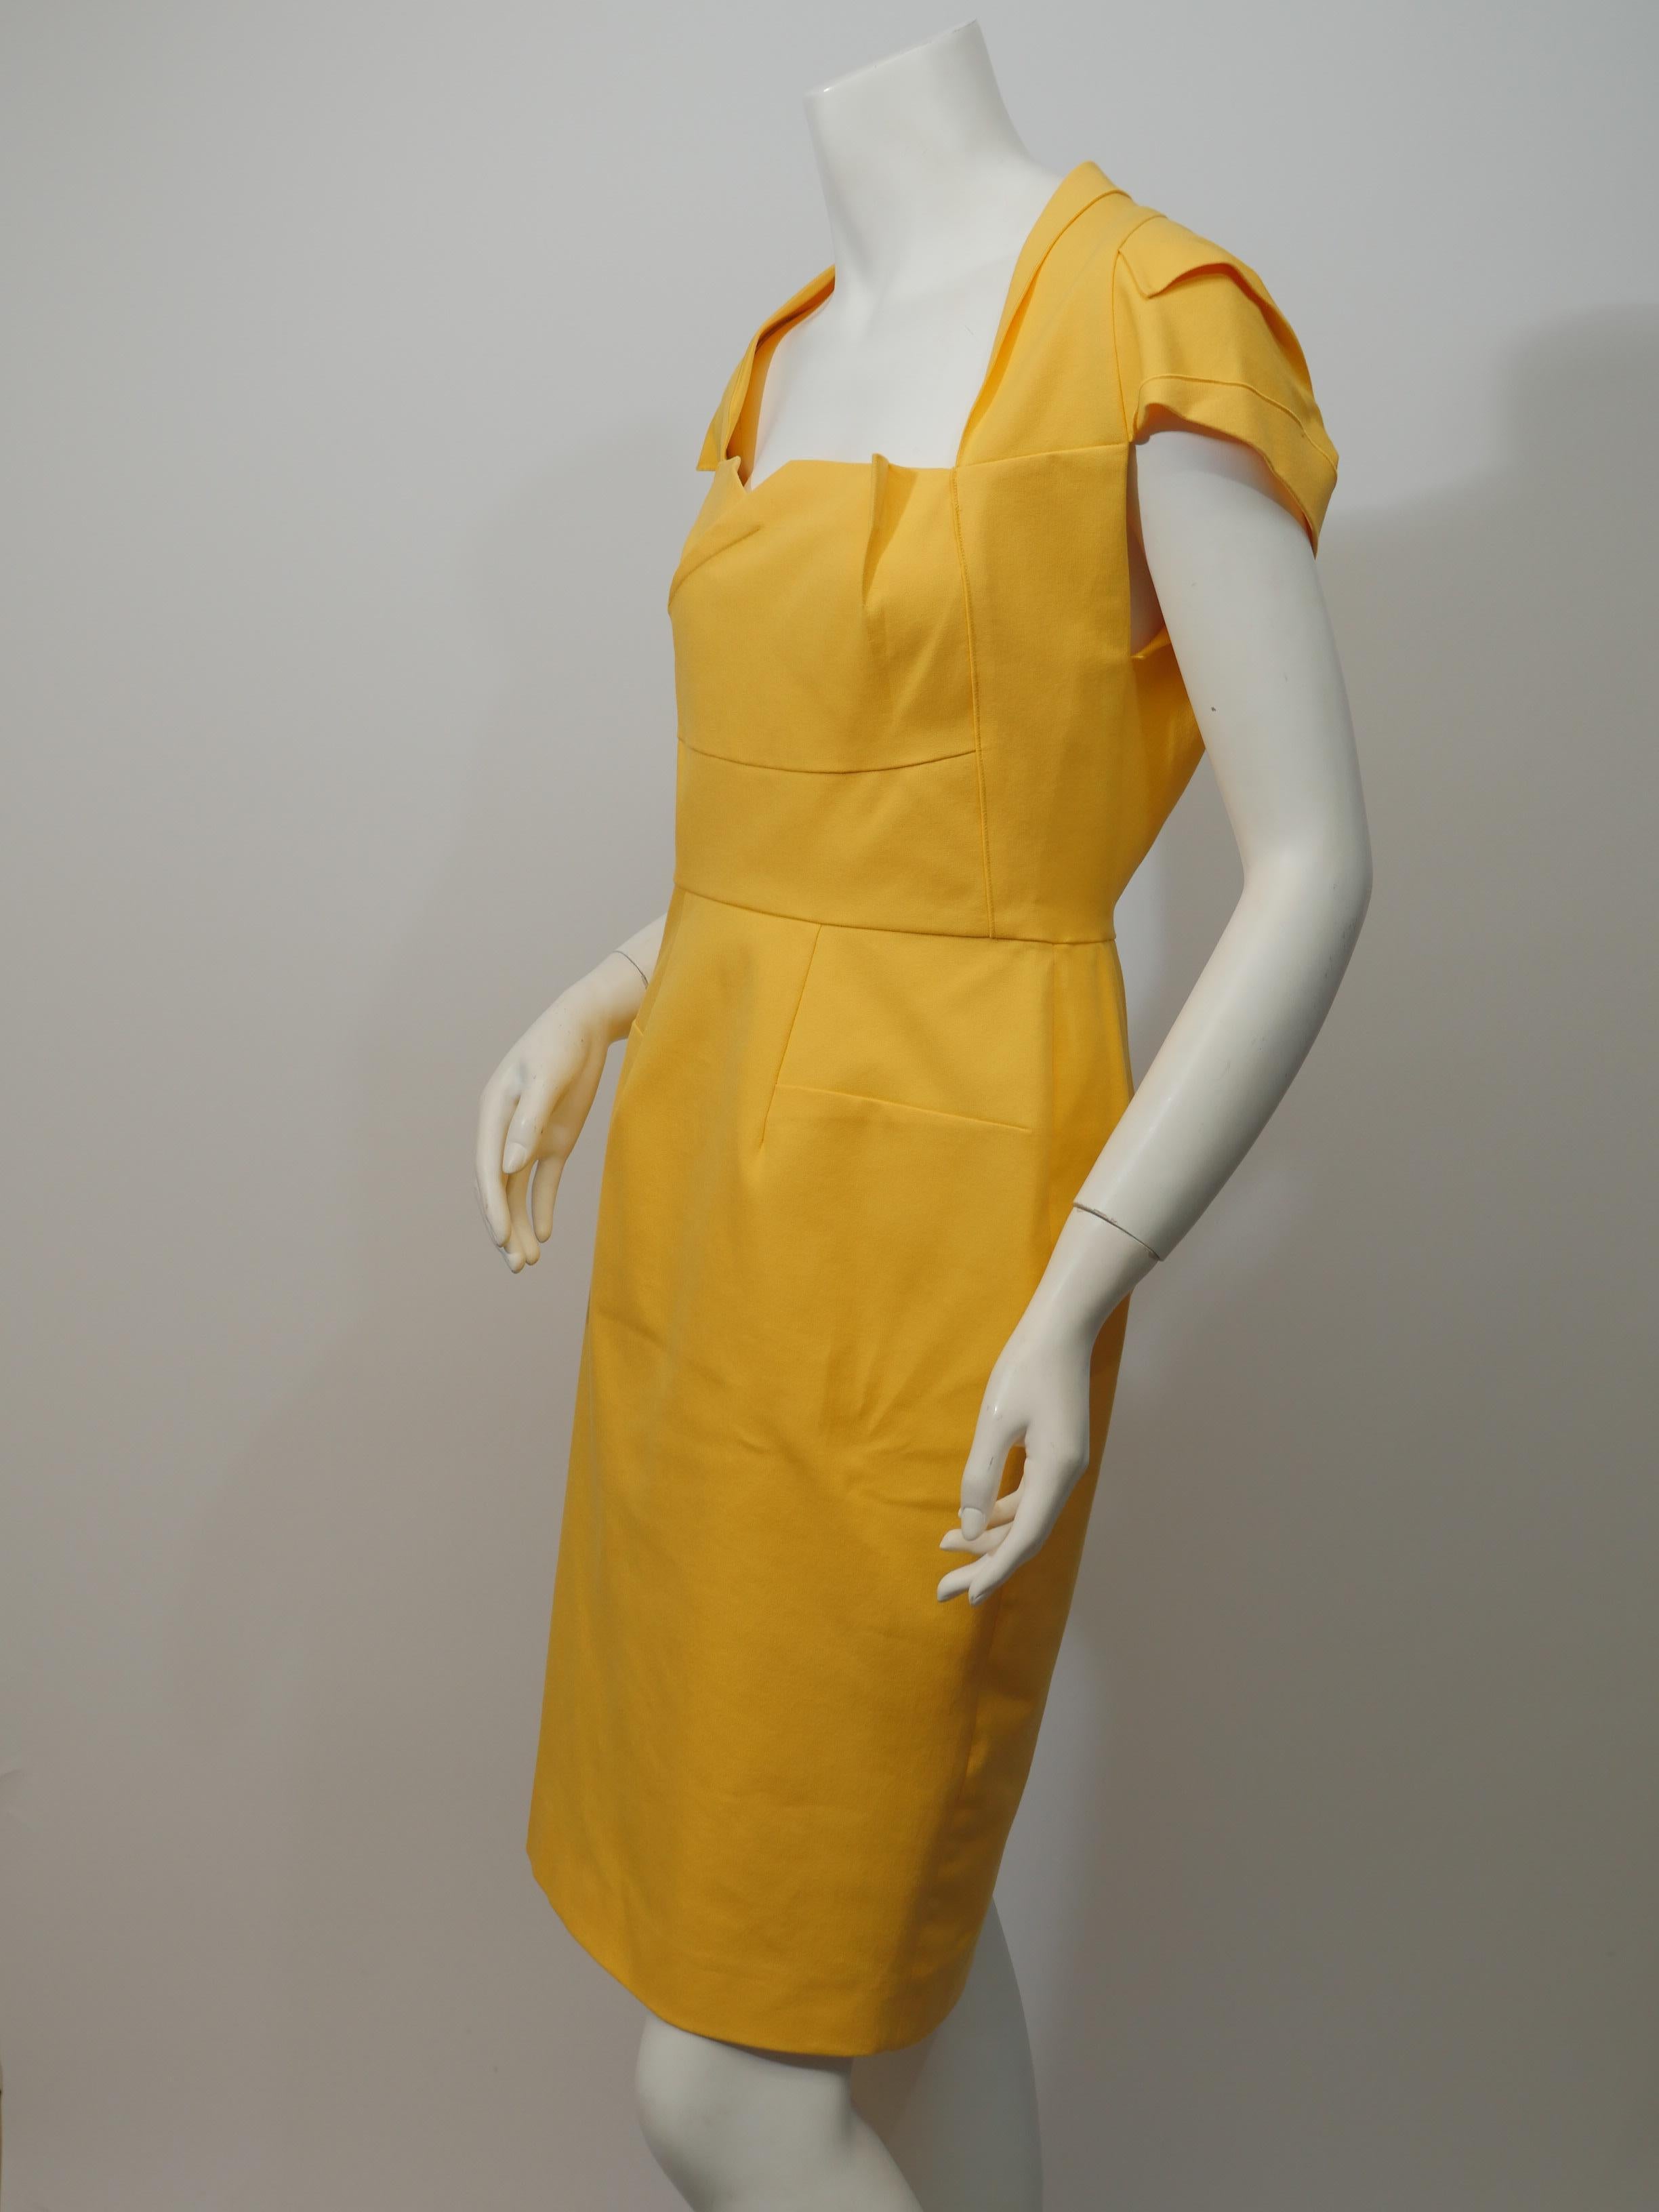 yellow sheath dress